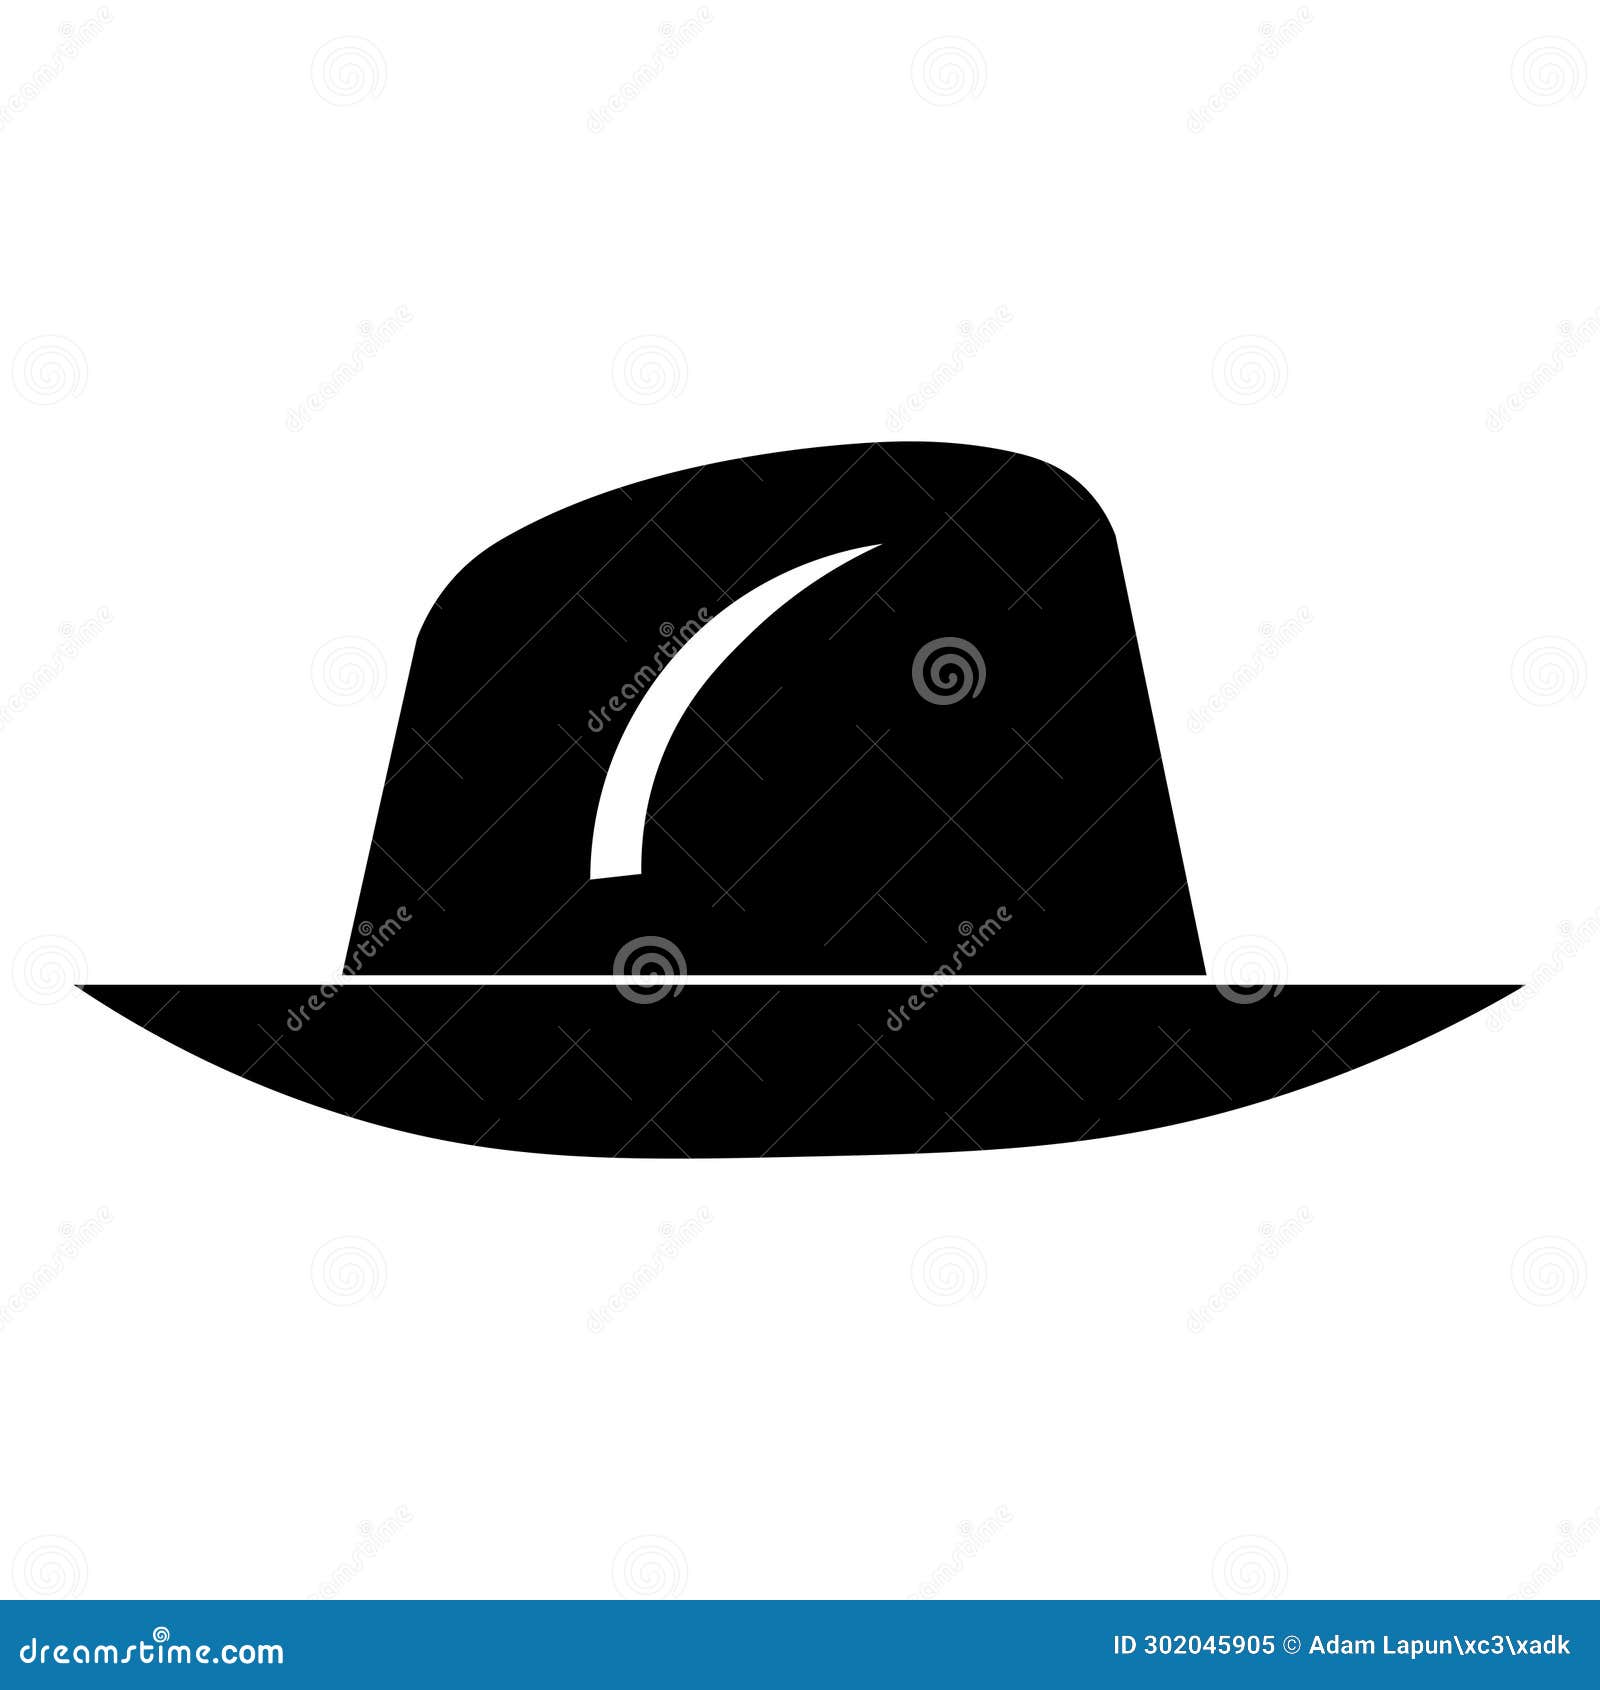 fedora hat black  icon on white background